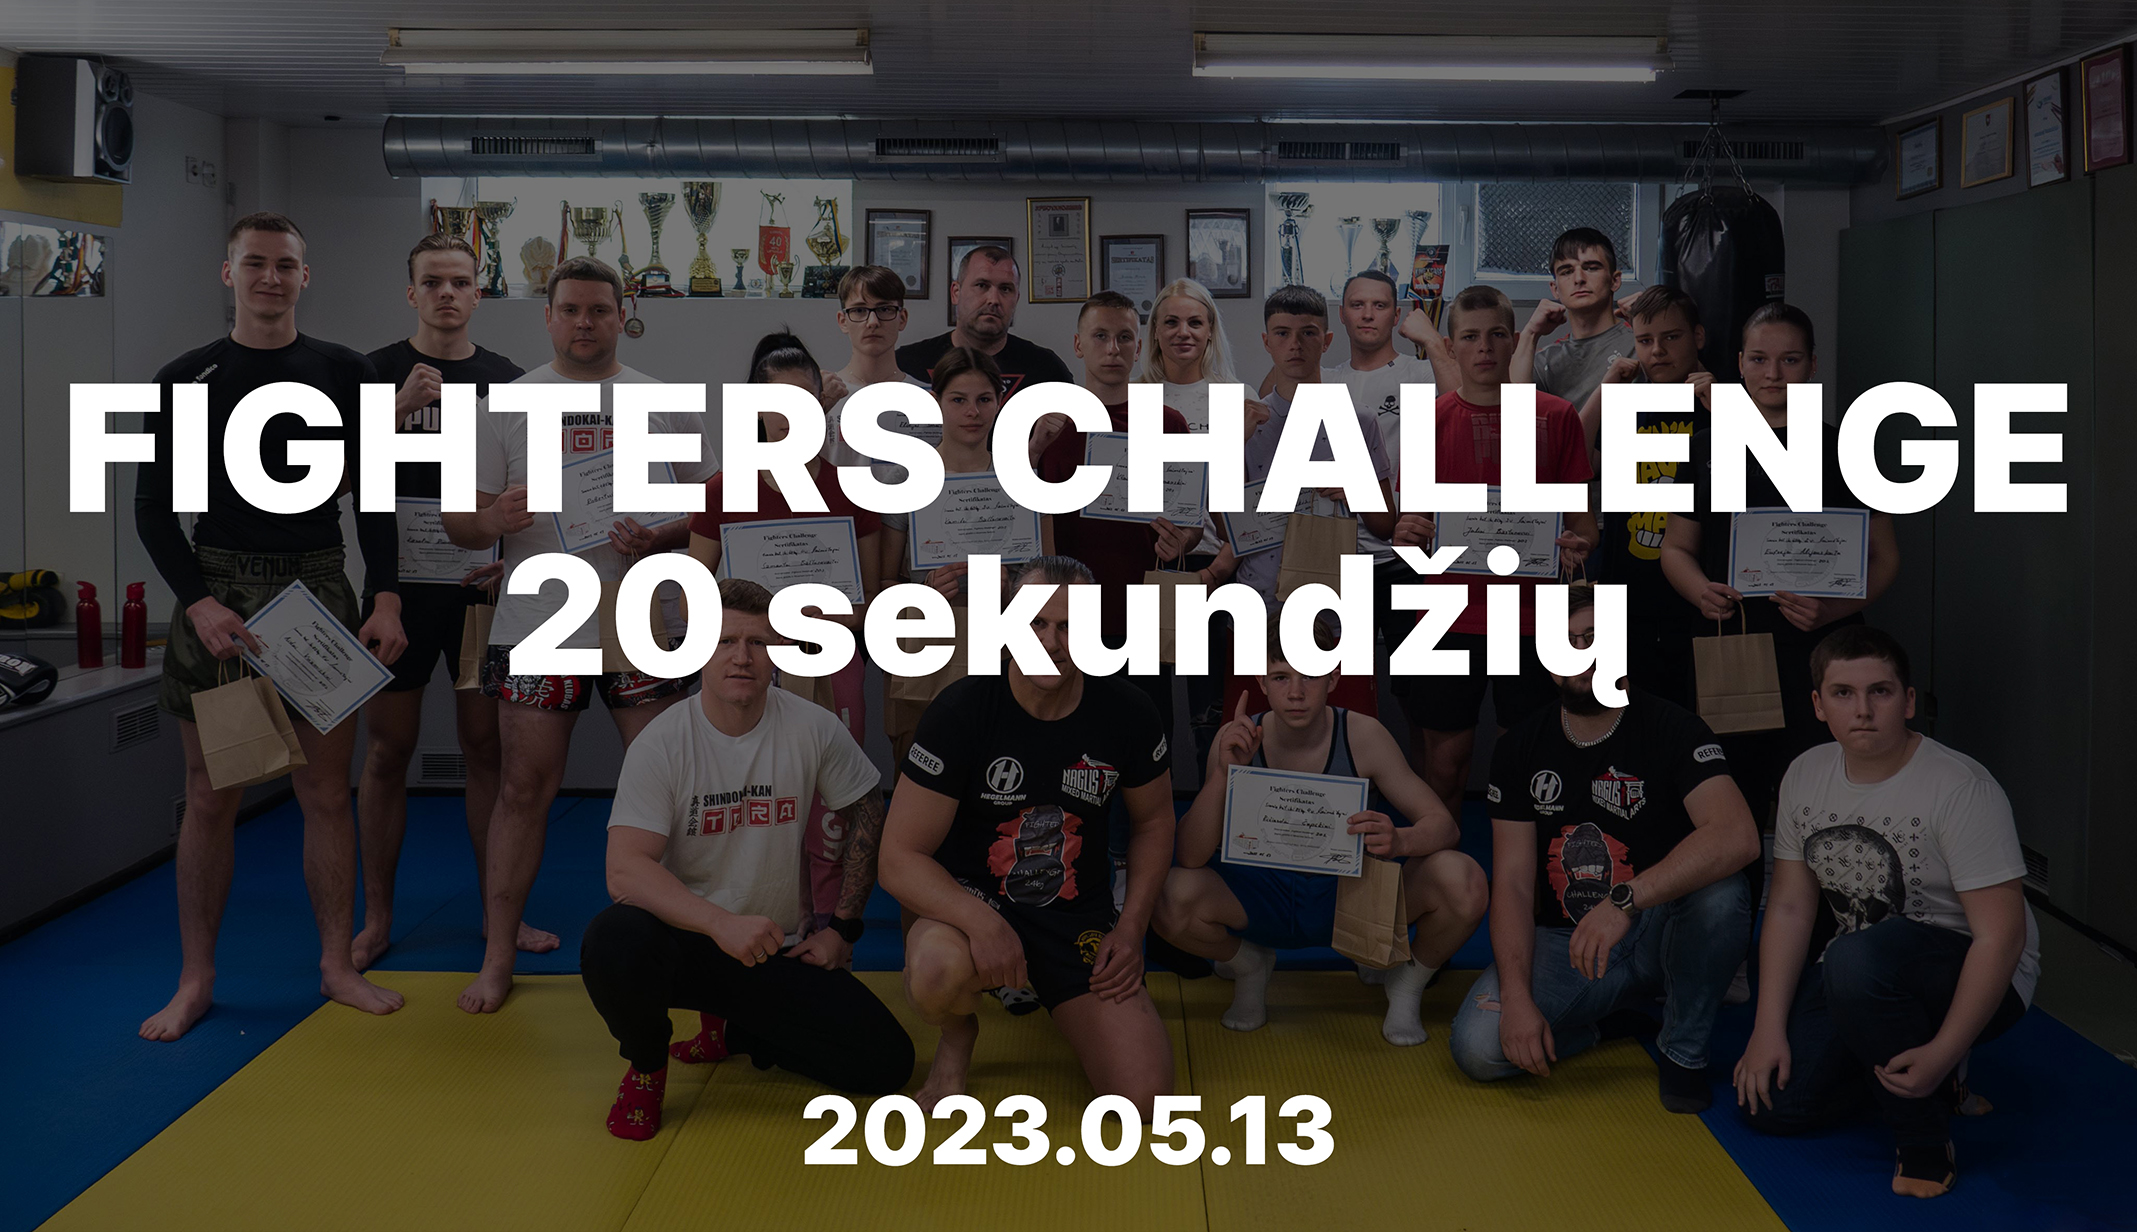 Fighters Challenge 20 sekundžių varžybos 2023.05.13